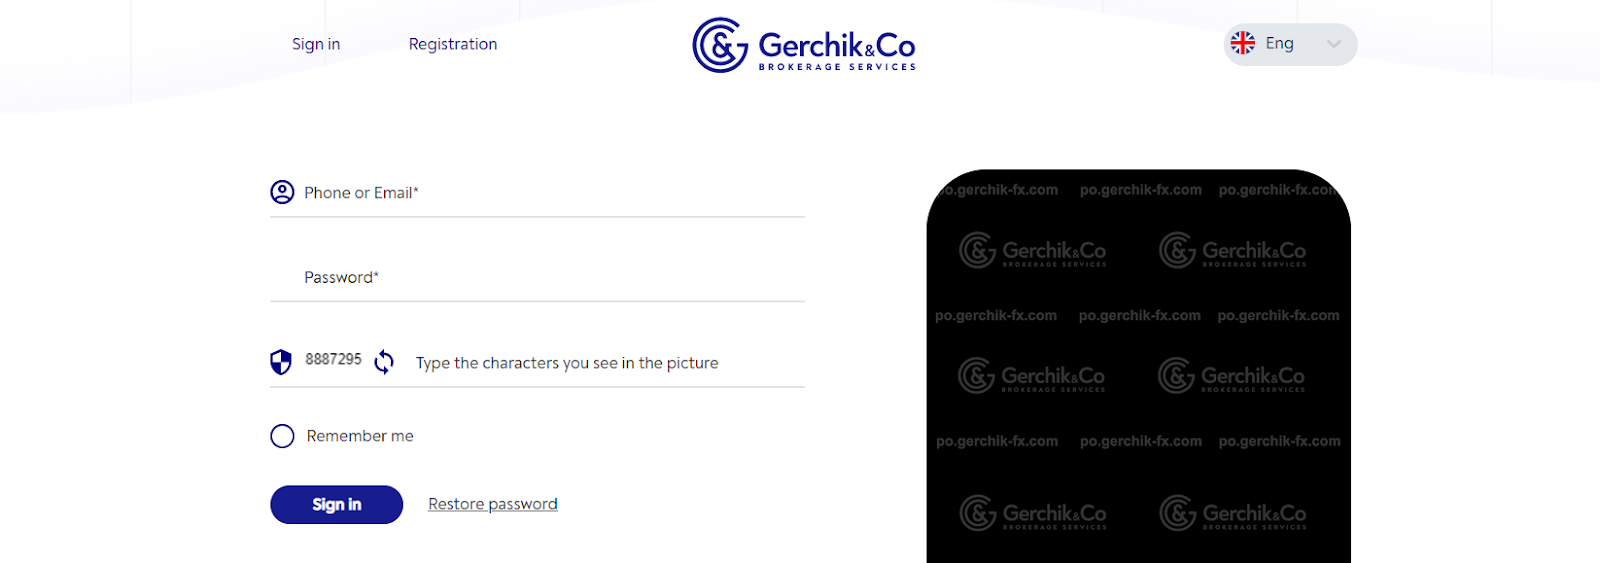 Gerchik & Co Пайдаланушы Тіркелгісіне Шолу - Кіру және Верификация